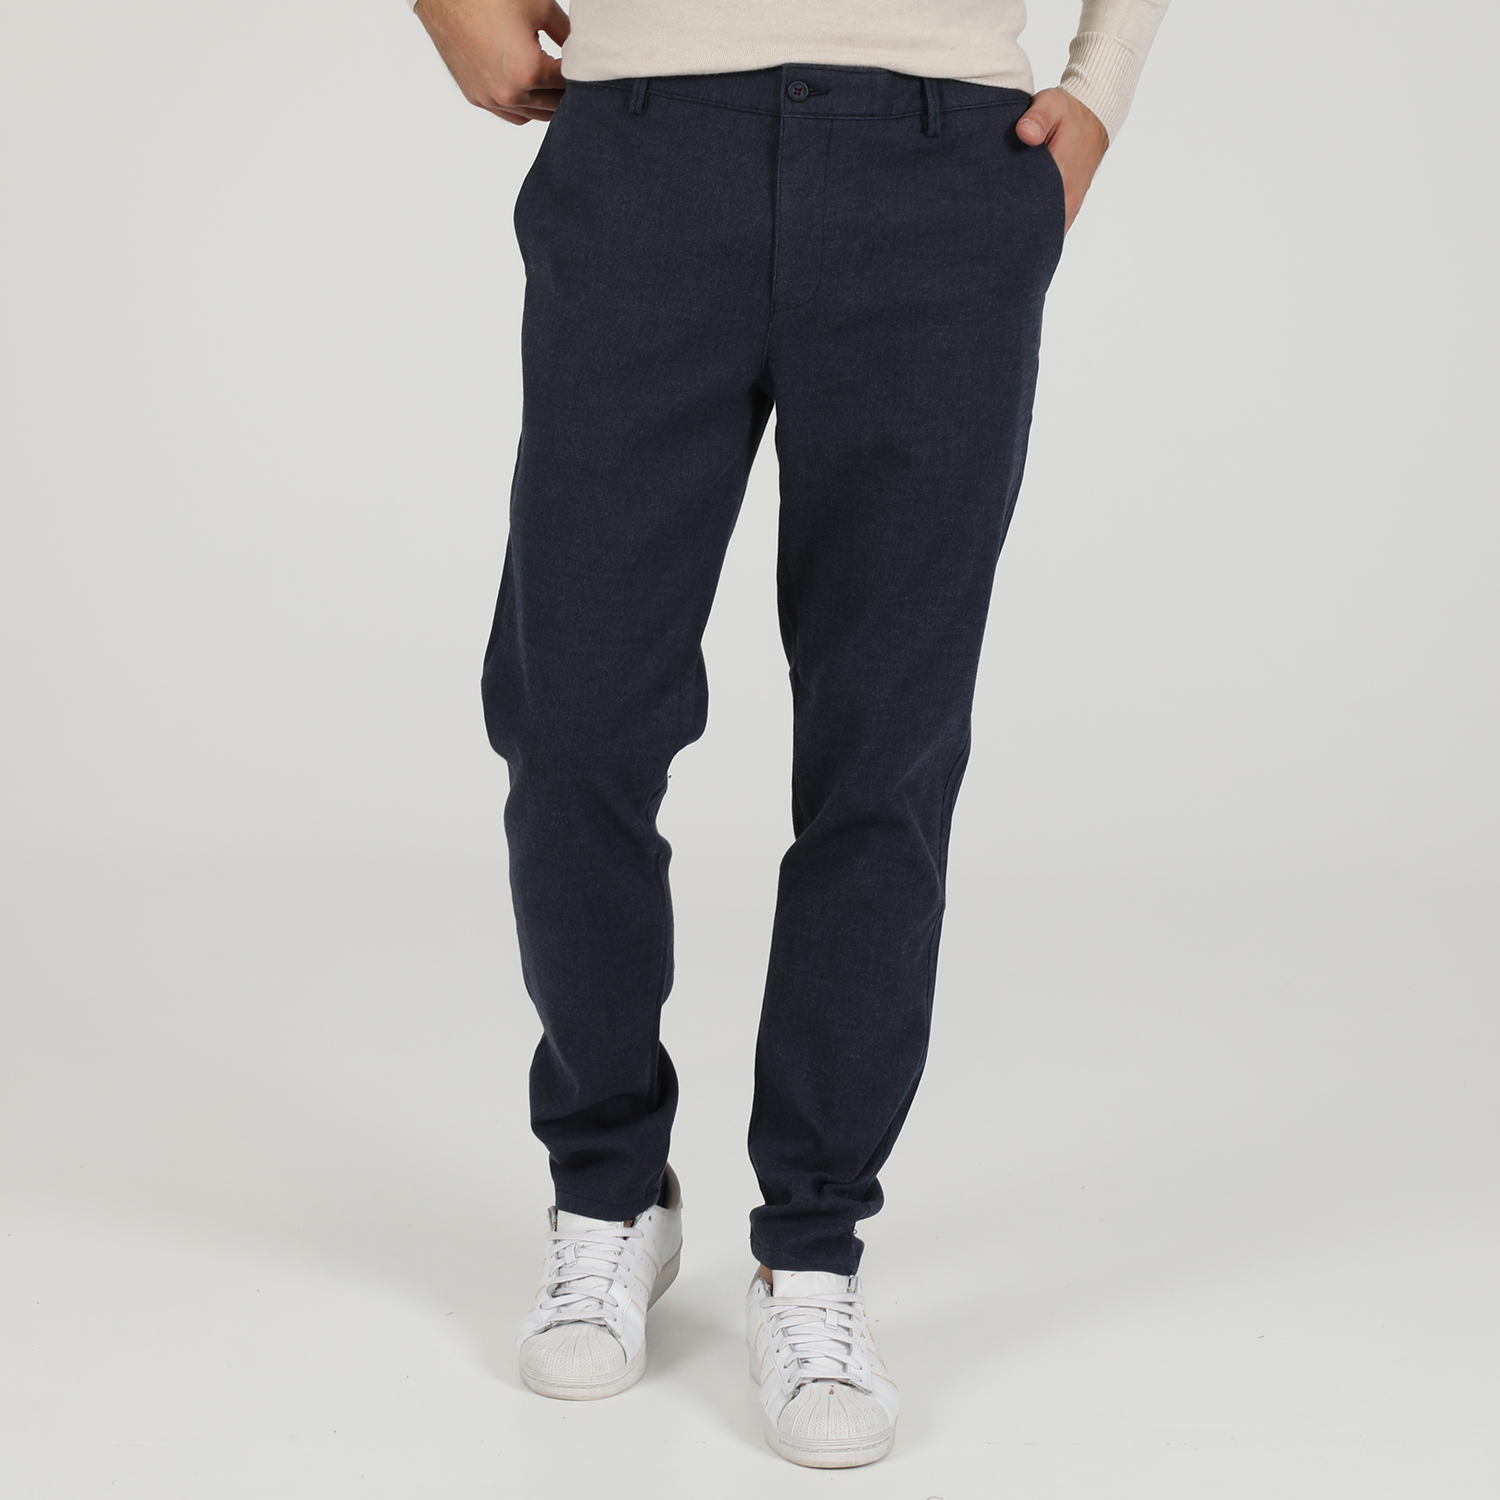 Ανδρικά/Ρούχα/Παντελόνια/Ισια Γραμμή MARTIN & CO - Ανδρικό παντελόνι MARTIN & CO SLIM PANT μπλε